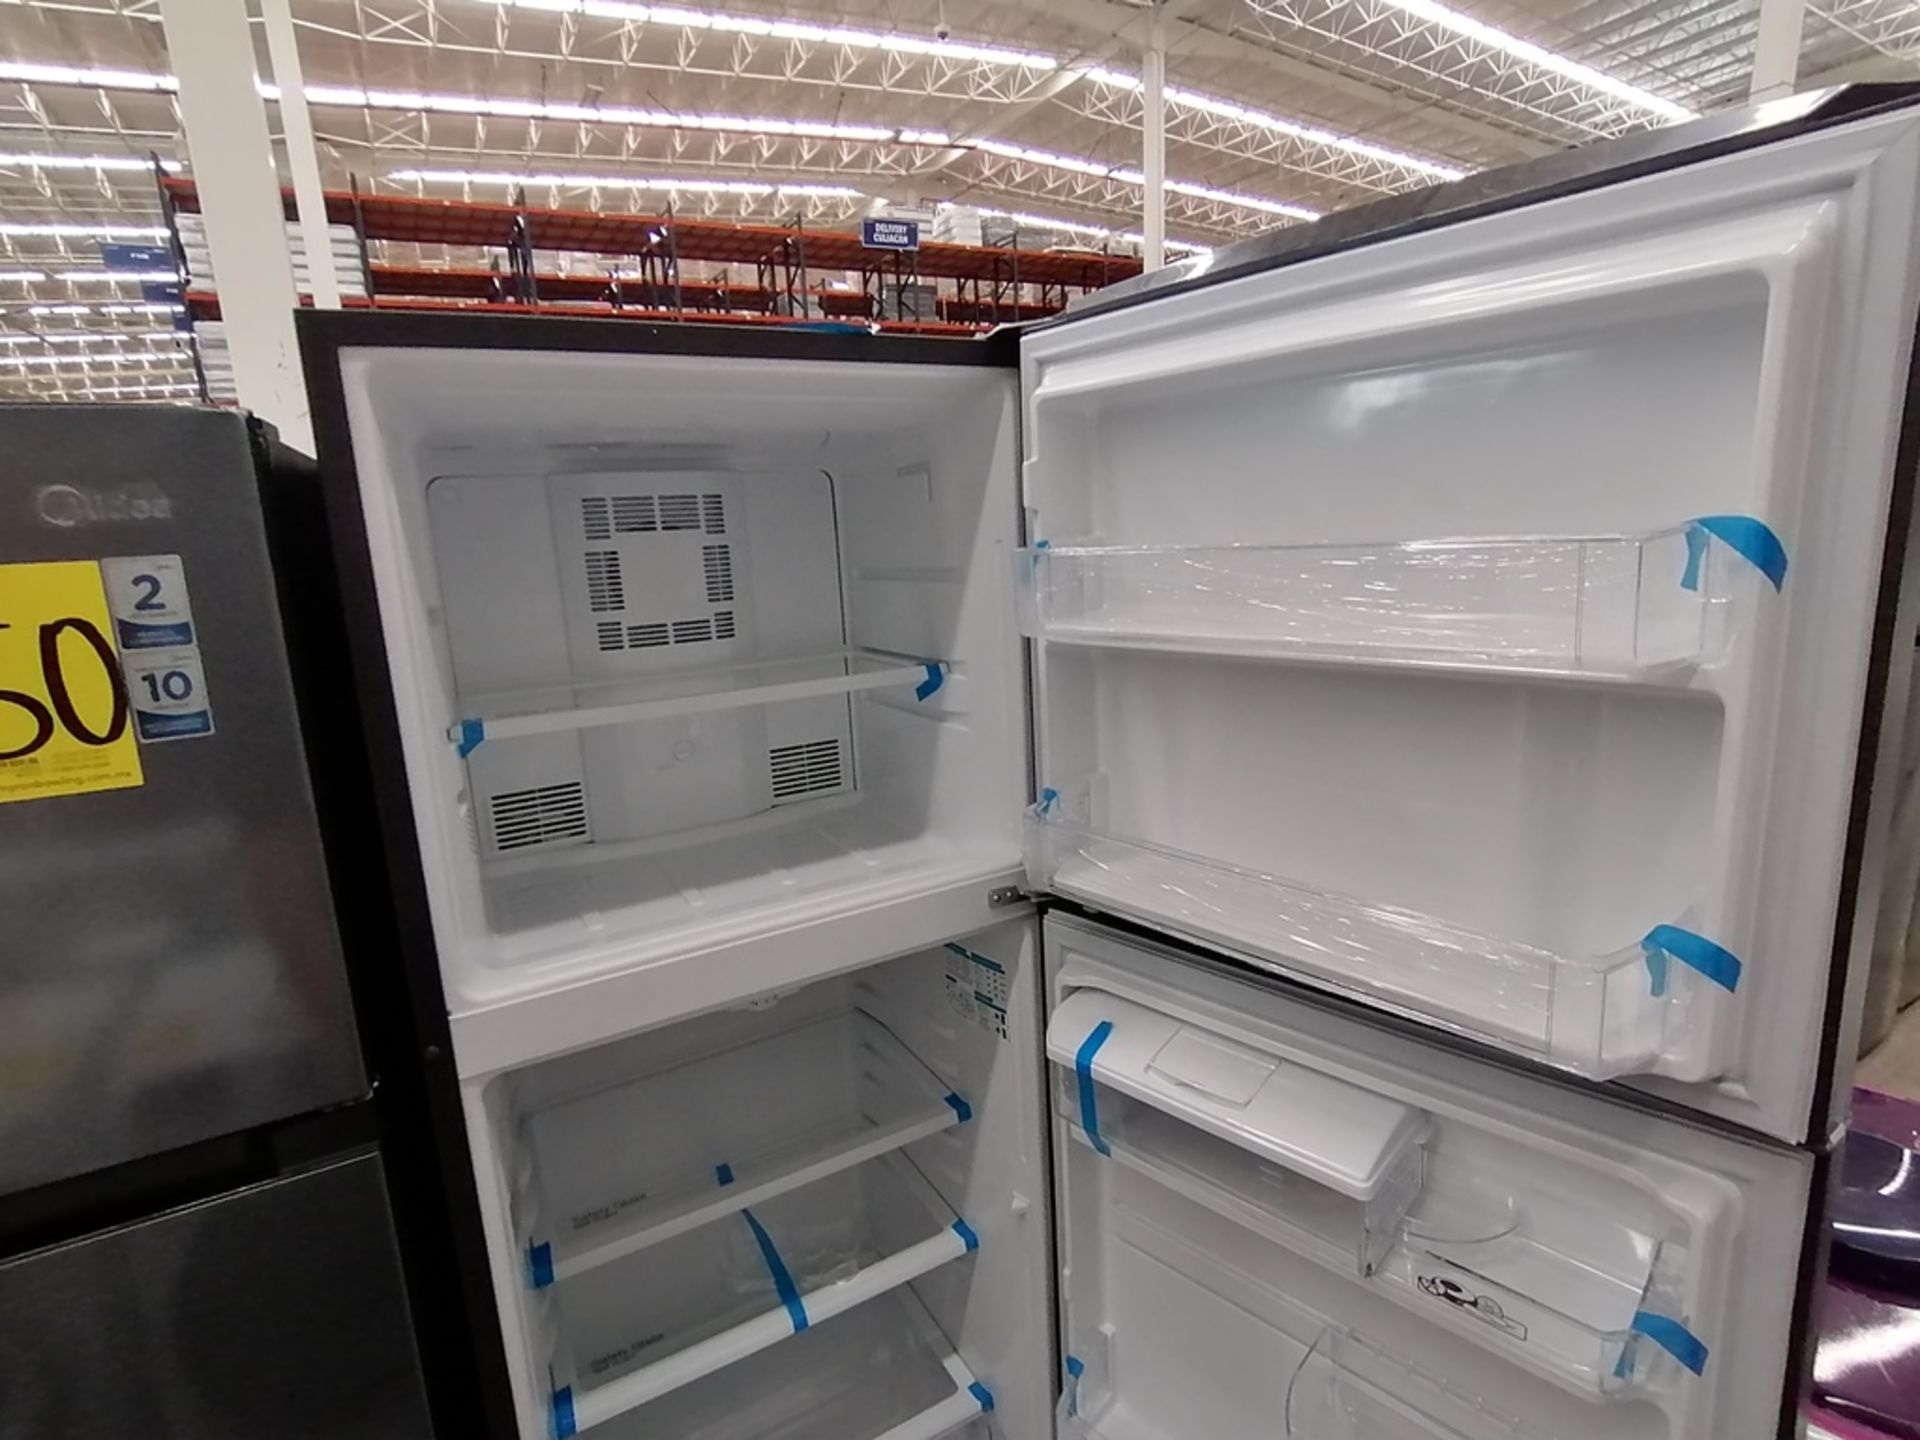 Lote de 2 refrigeradores incluye: 1 Refrigerador, Marca Midea, Modelo MRTN09G2NCS, Serie 341B261870 - Image 6 of 15